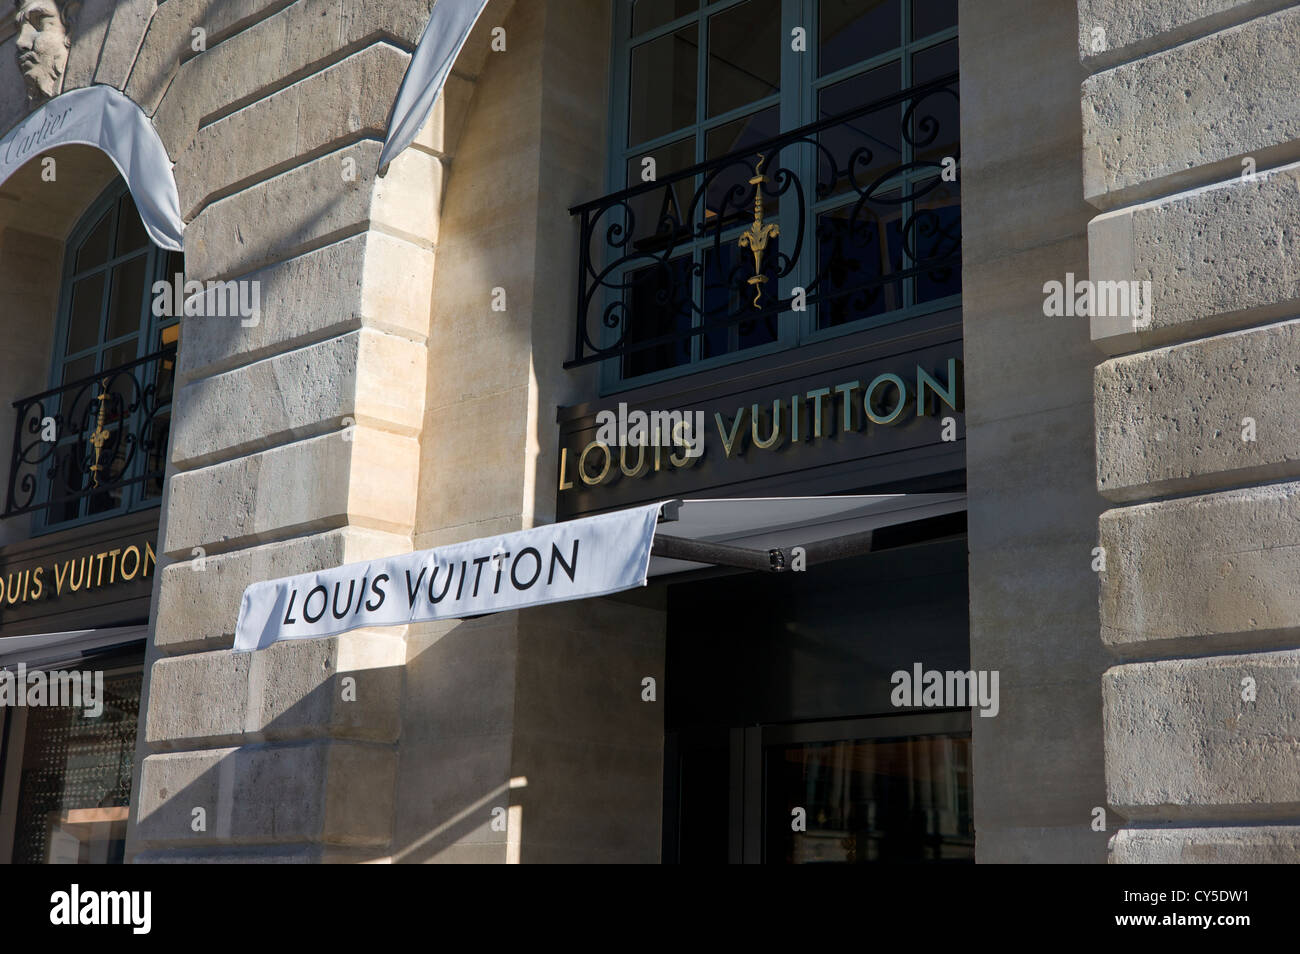 Louis Vuitton Shop front in Paris France Stock Photo - Alamy